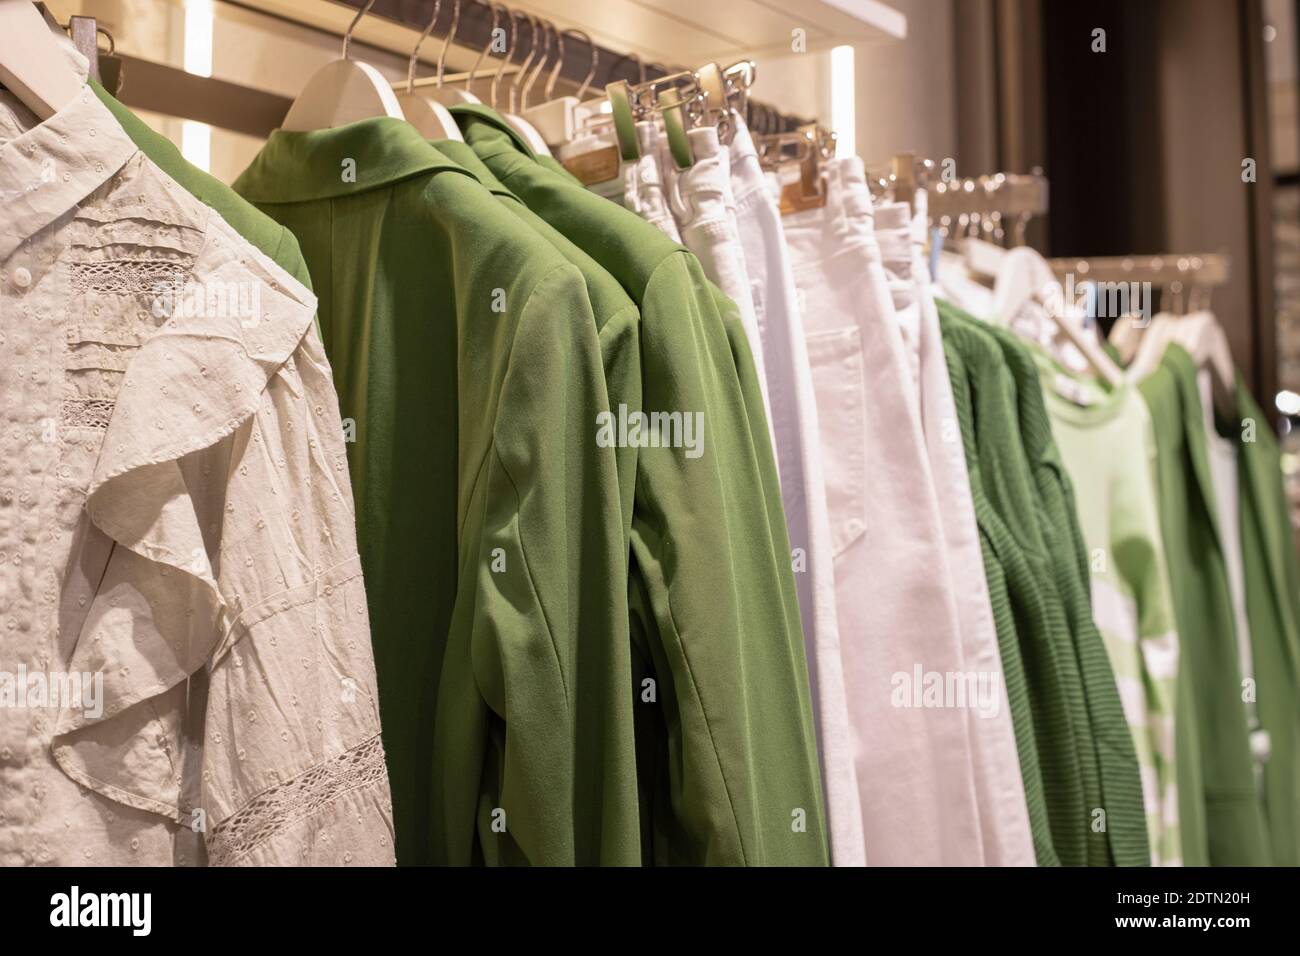 Collezione di abbigliamento donna su appendiabiti in negozio. Il concetto di consumo cosciente e riciclaggio delle cose. Foto Stock